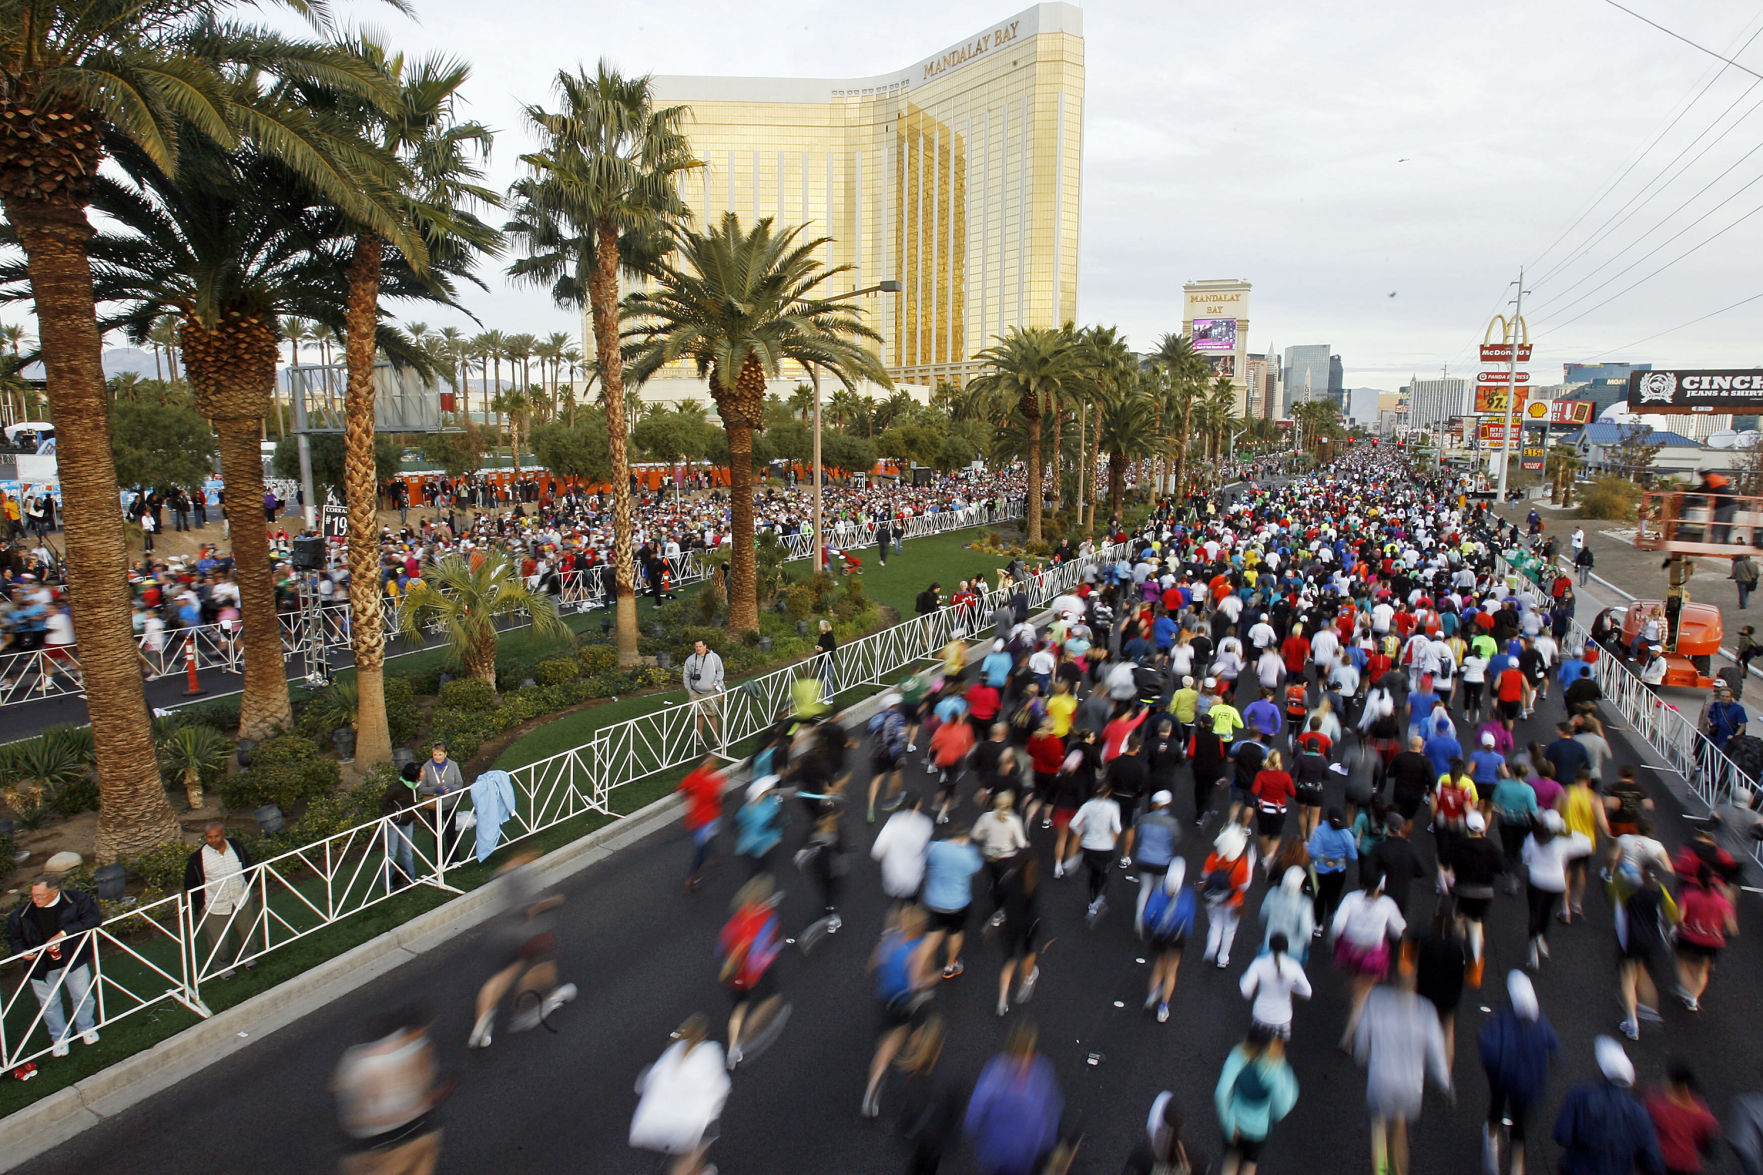 Las Vegas marathon moves start line away from shooting scene The